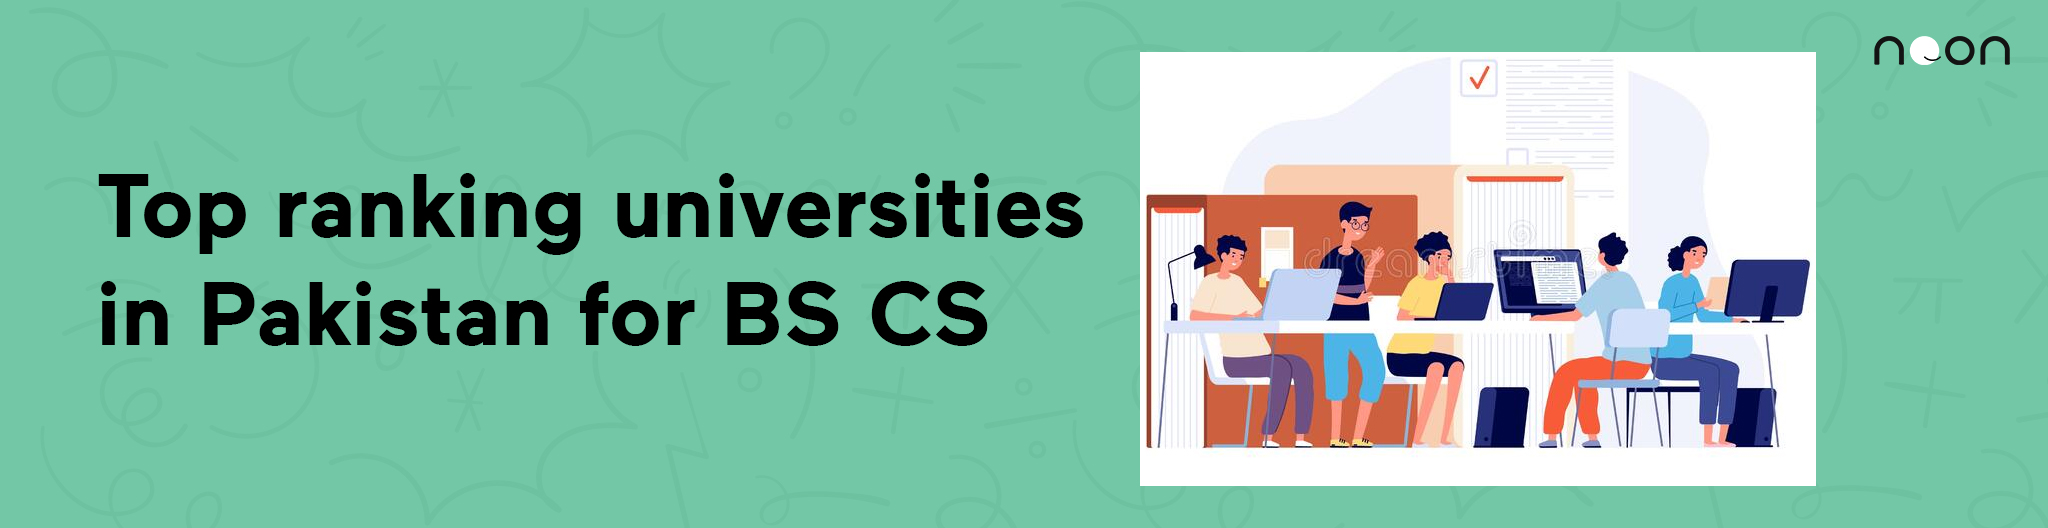 Top ranking universities in Pakistan for BS CS